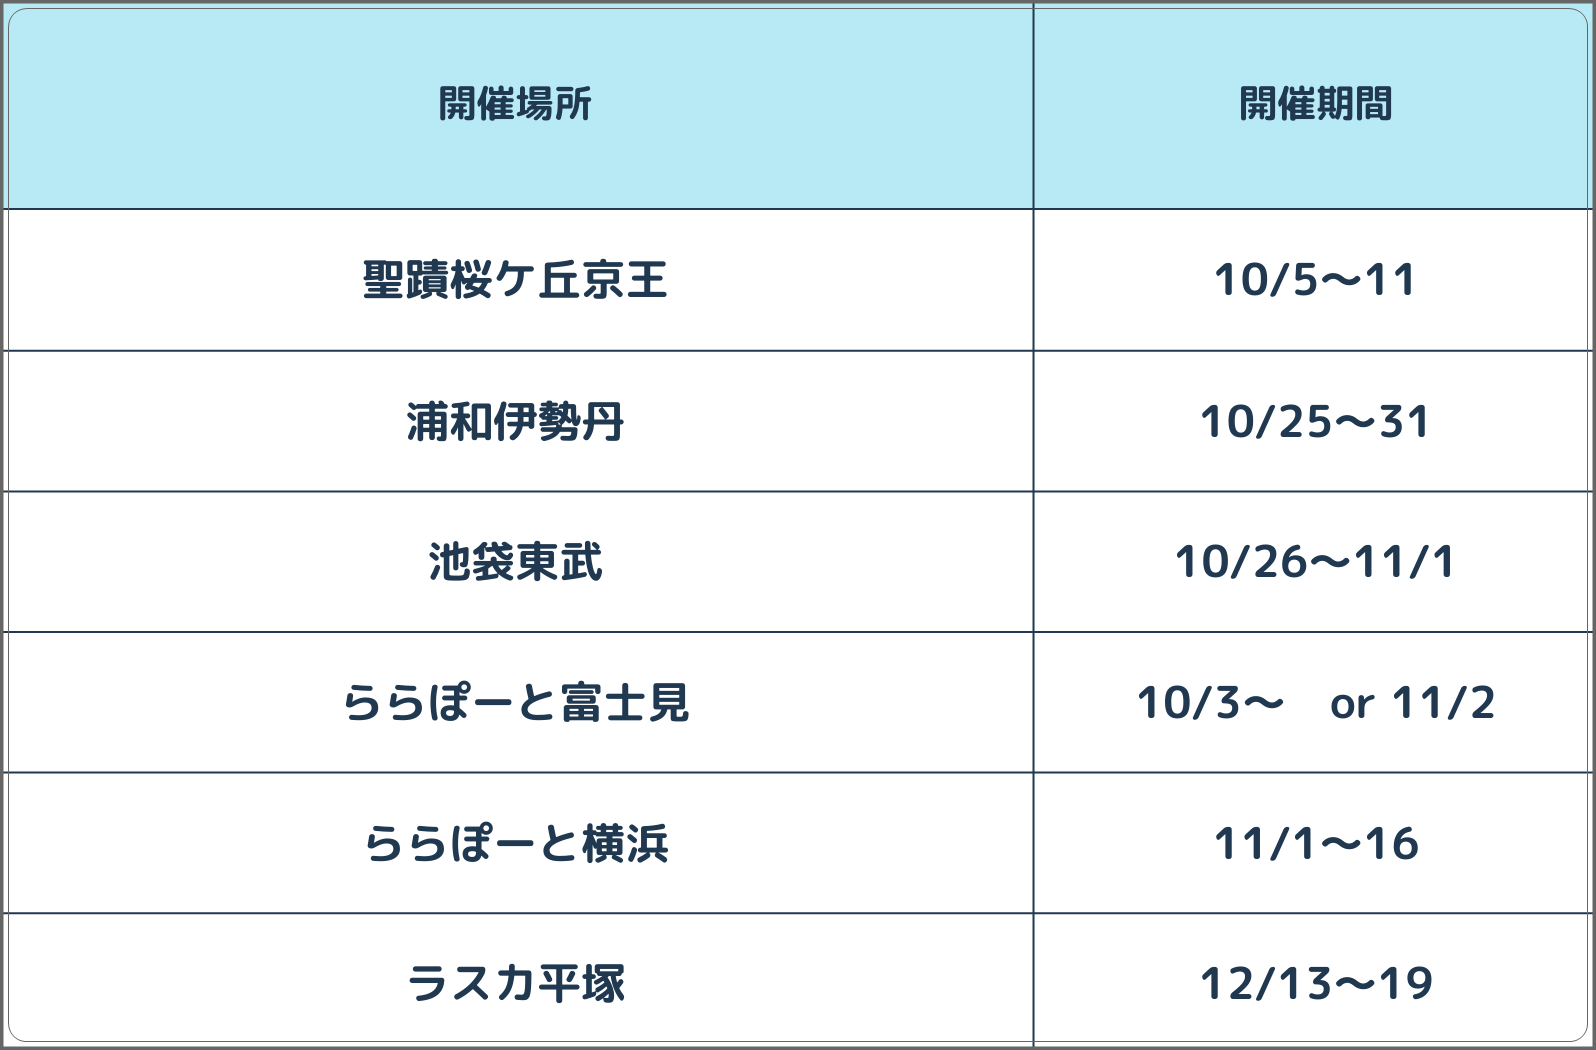 1日1,000個売り上げる大阪難波発のプリン専門店が「おばけハロウィン」スイーツを期間限定発売。催事出店で関東初進出のサブ画像2